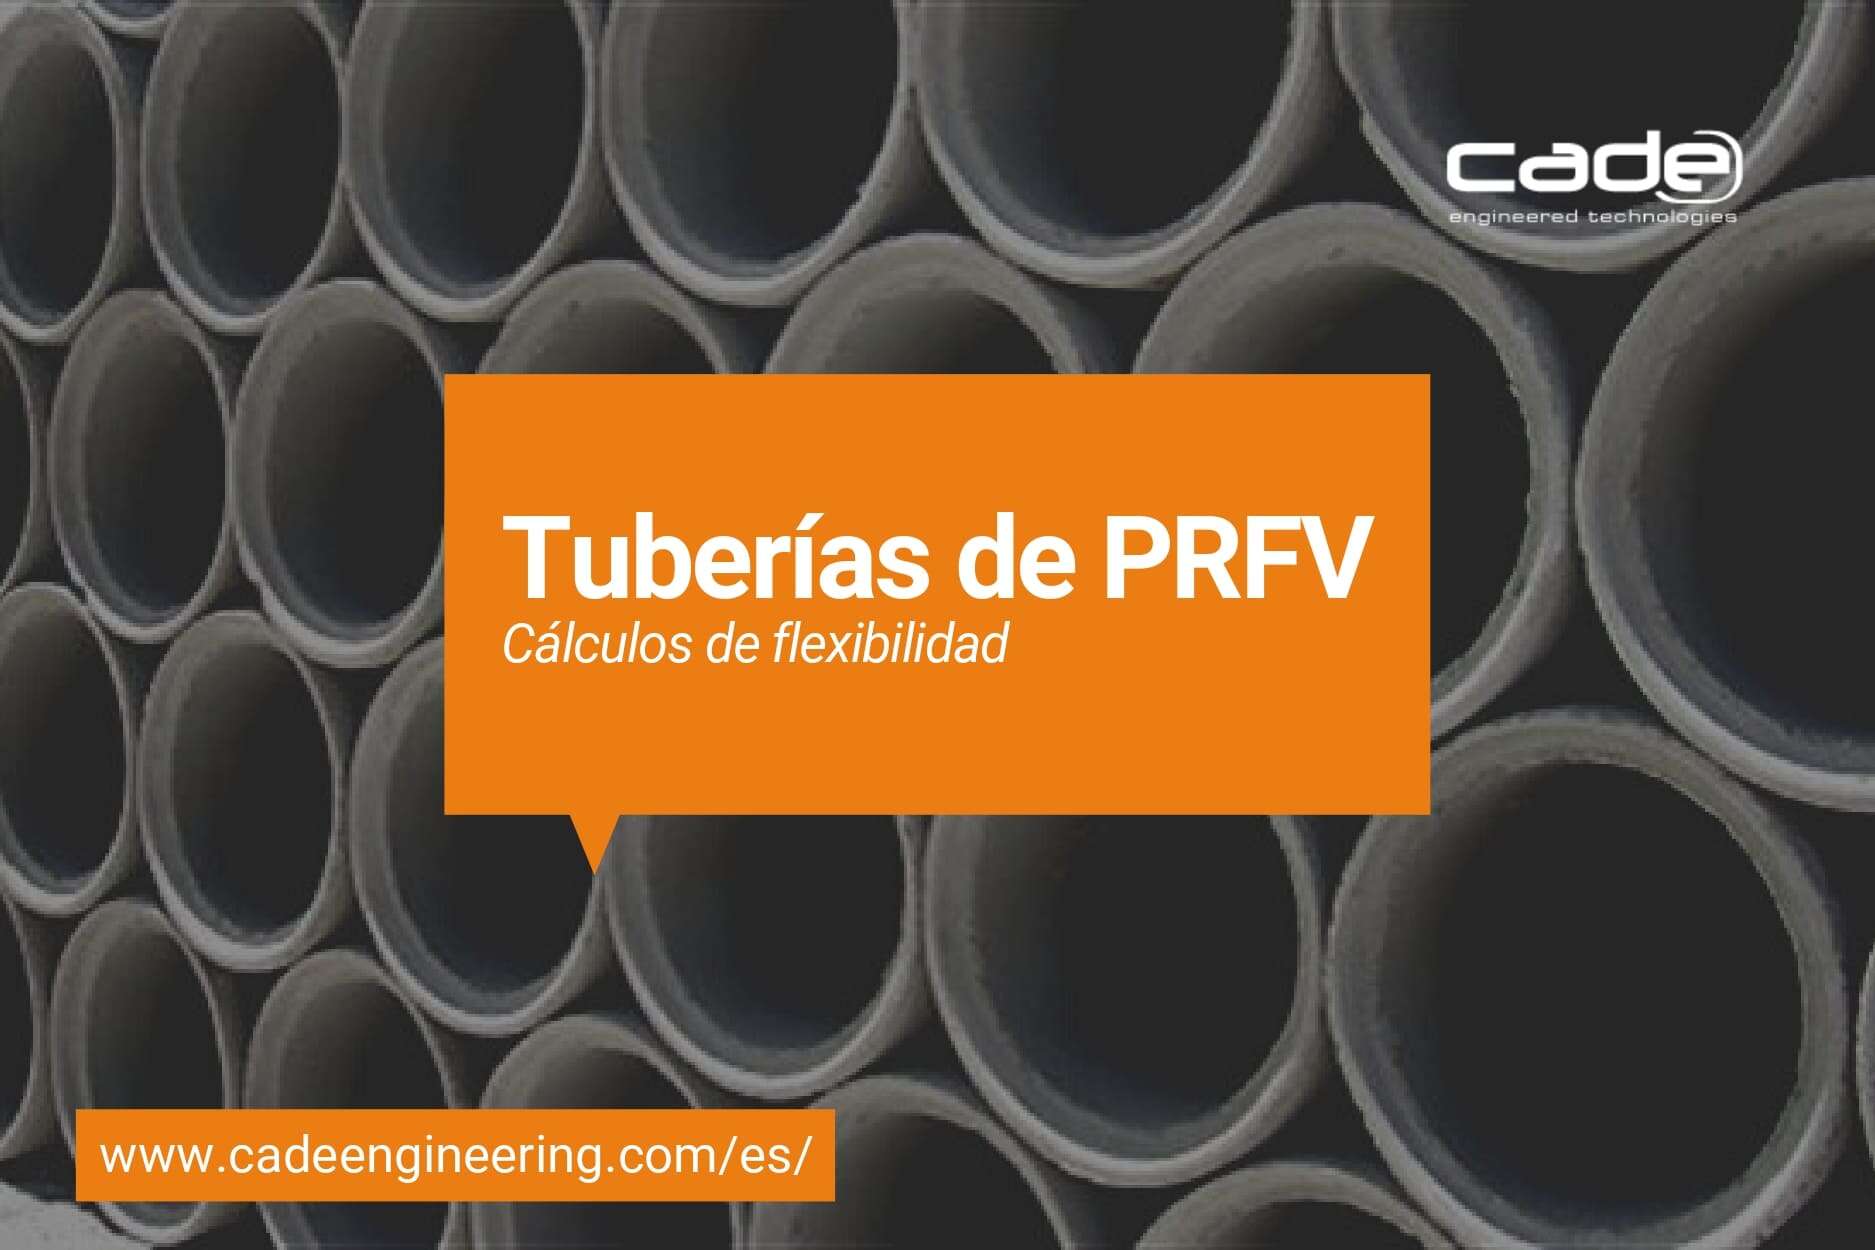 Tropical tira pasta Cálculo De Flexibilidad De Tuberías De PRFV | CADE Engineered Technologies